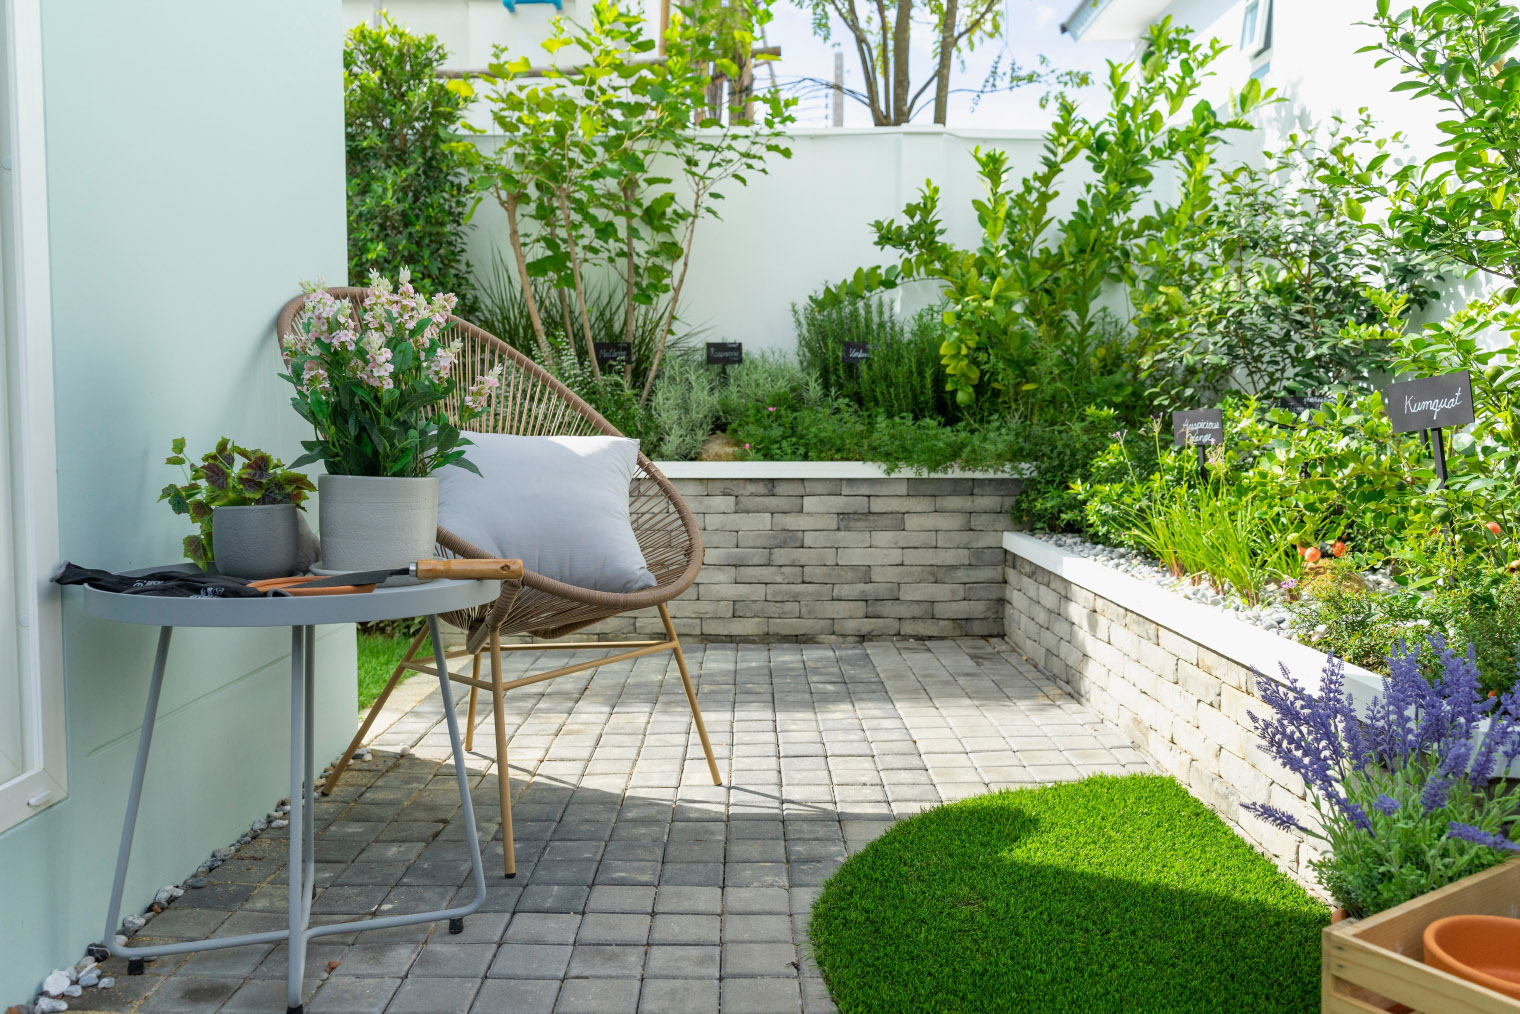 Хорошее решение для маленьких дворов и зоны отдыха у дома. Источник: ben bryant / Shutterstock